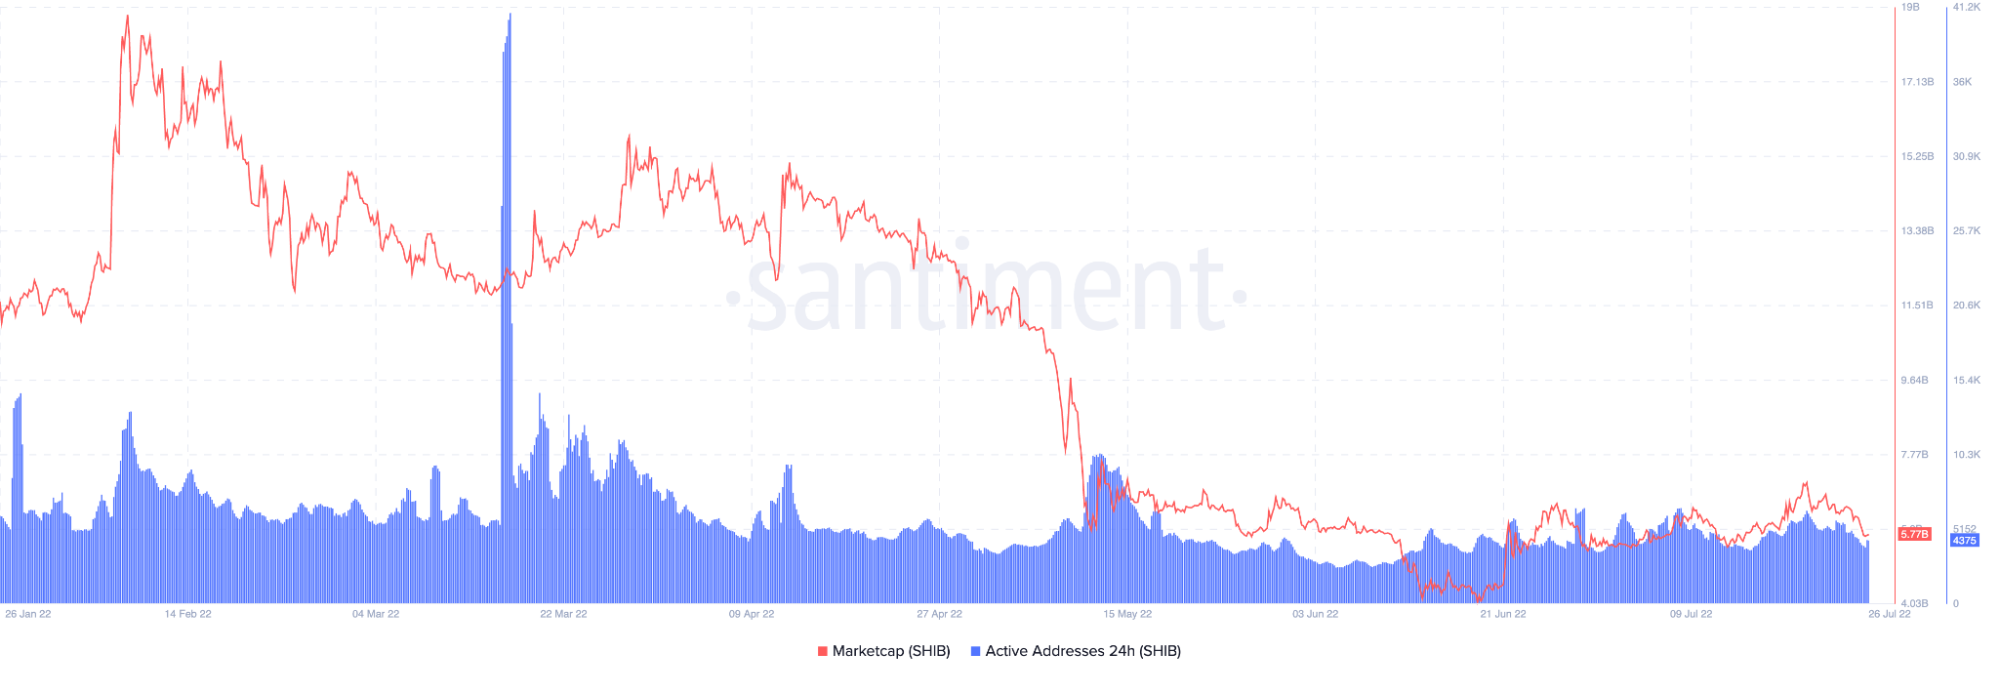 Tỷ lệ ghi của Shiba Inu tăng cao trong khi phát hành thẻ tiền điện tử; là một sự phục hồi trong tầm nhìn 61